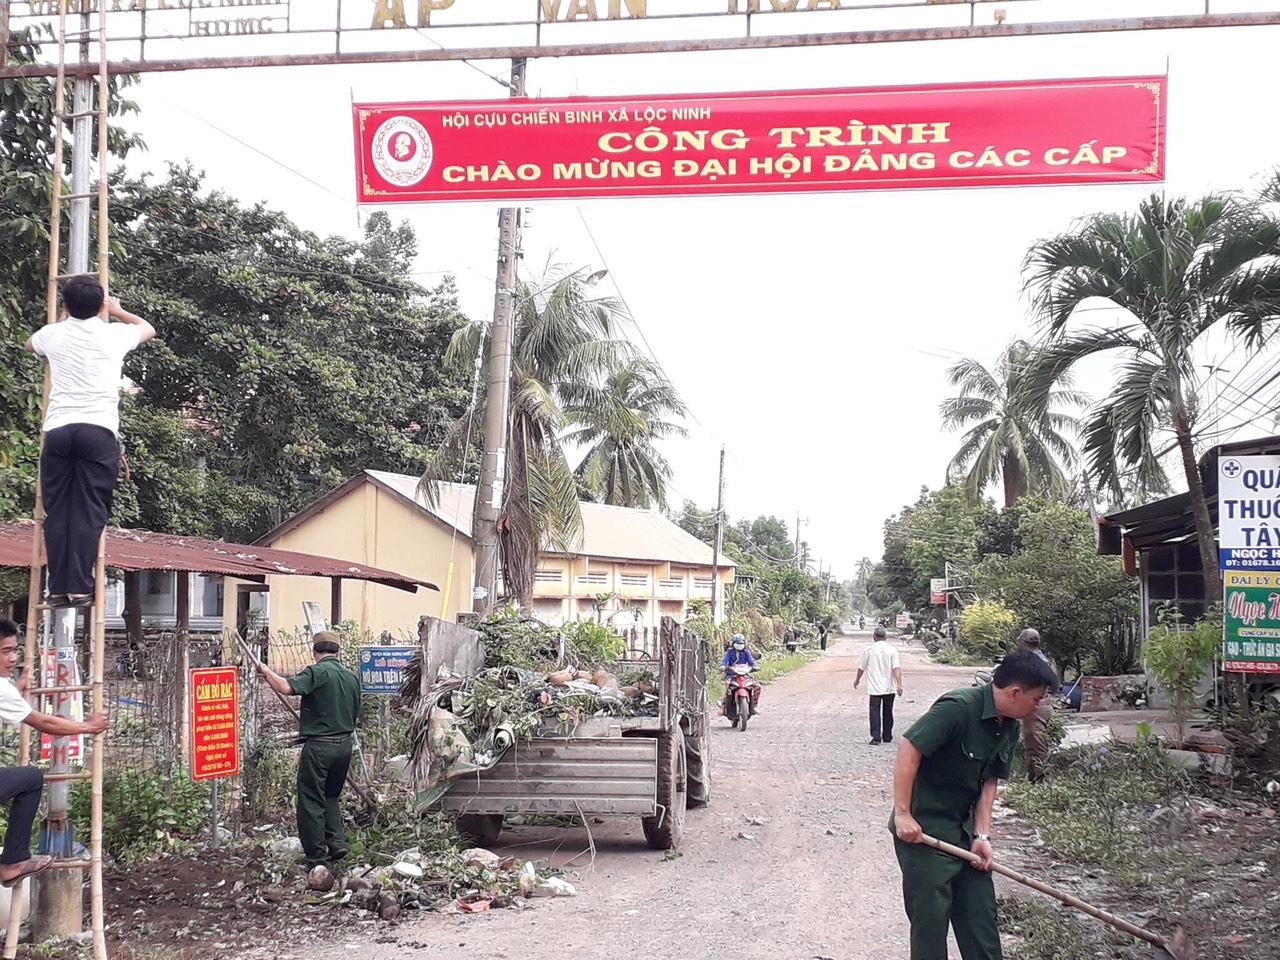 Hội cựu chiến binh xã Lộc Ninh ra quân làm công tác dân vận đợt 1 năm 2020